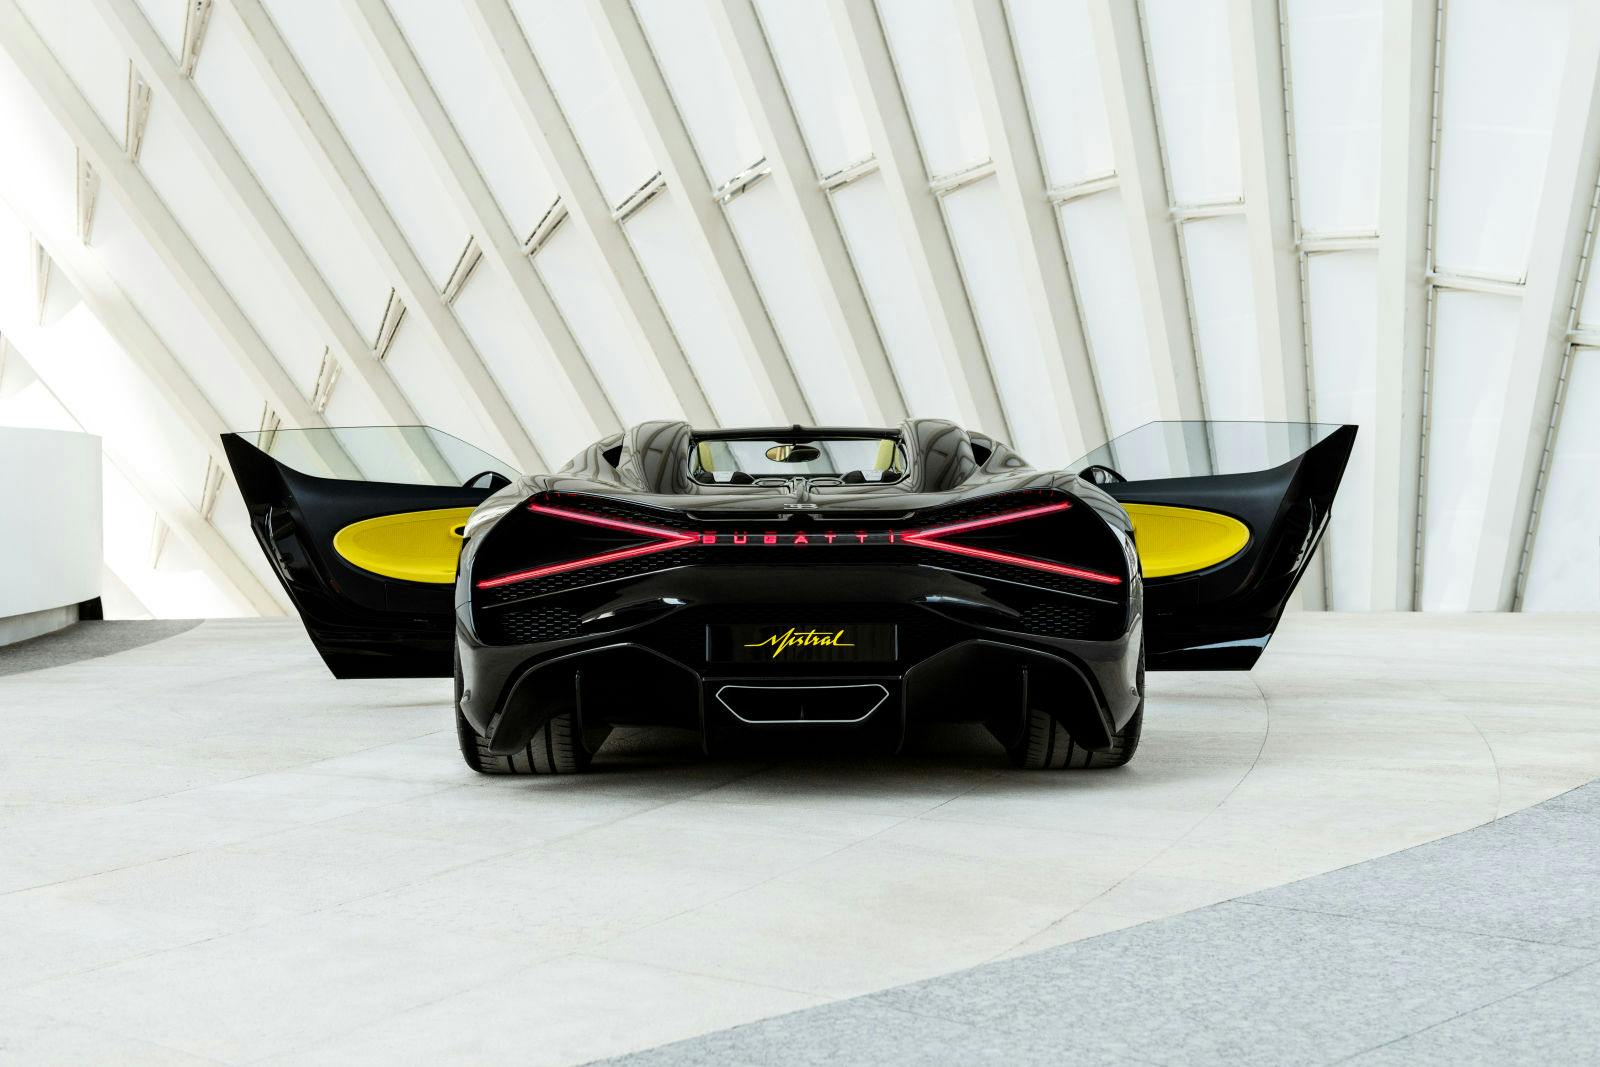 Pour sa tournée en Arabie saoudite, le premier arrêt de la Bugatti W16 Mistral a été le quartier financier du roi Abdallah.